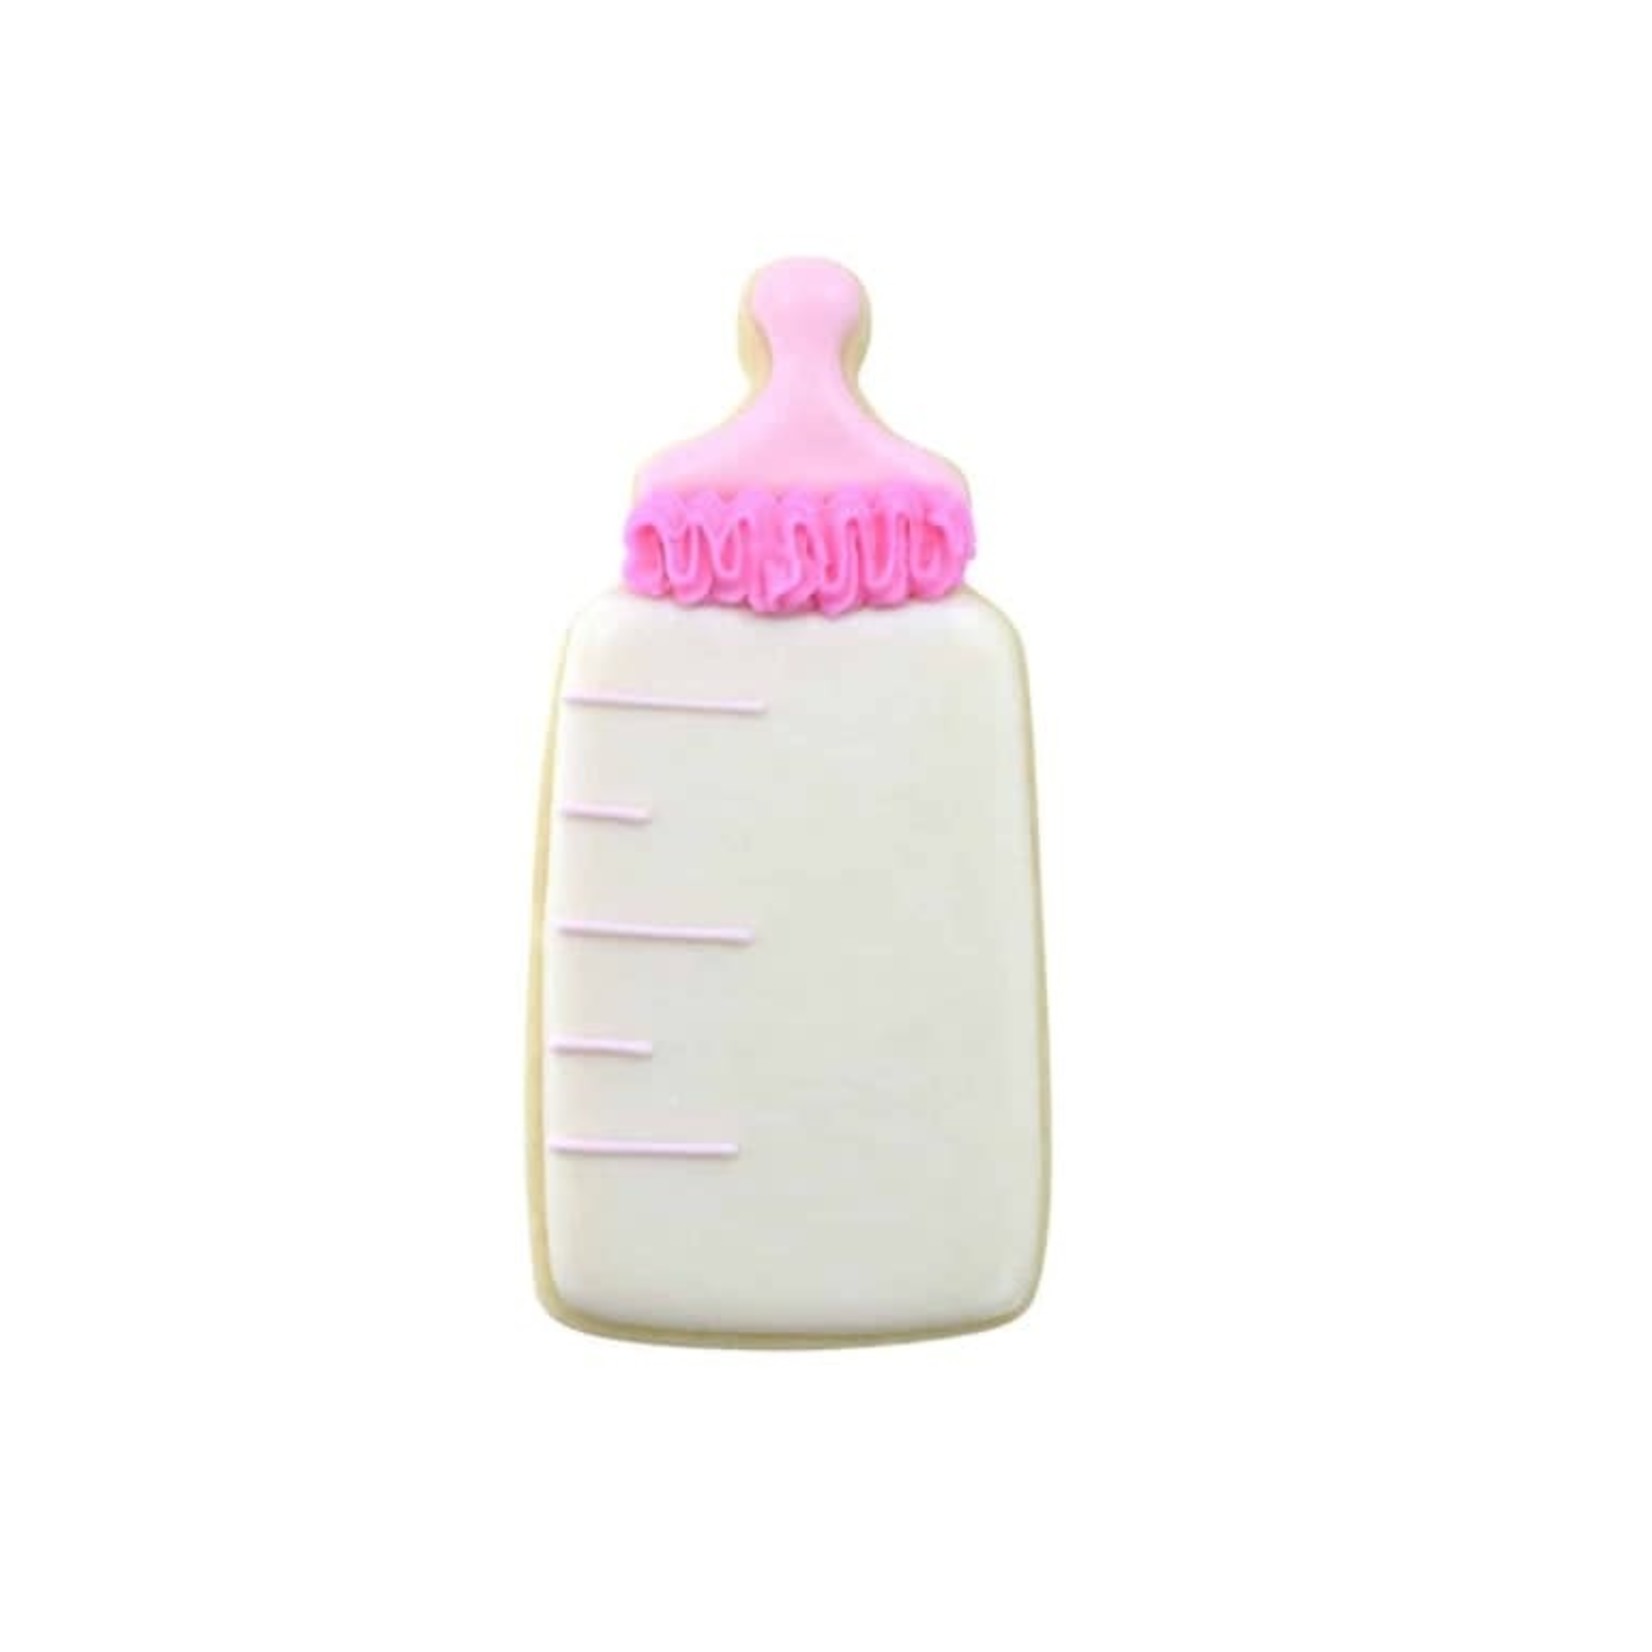 R&M INTERNATIONAL R&M Cookie Cutter Baby Bottle  4”  White DNR